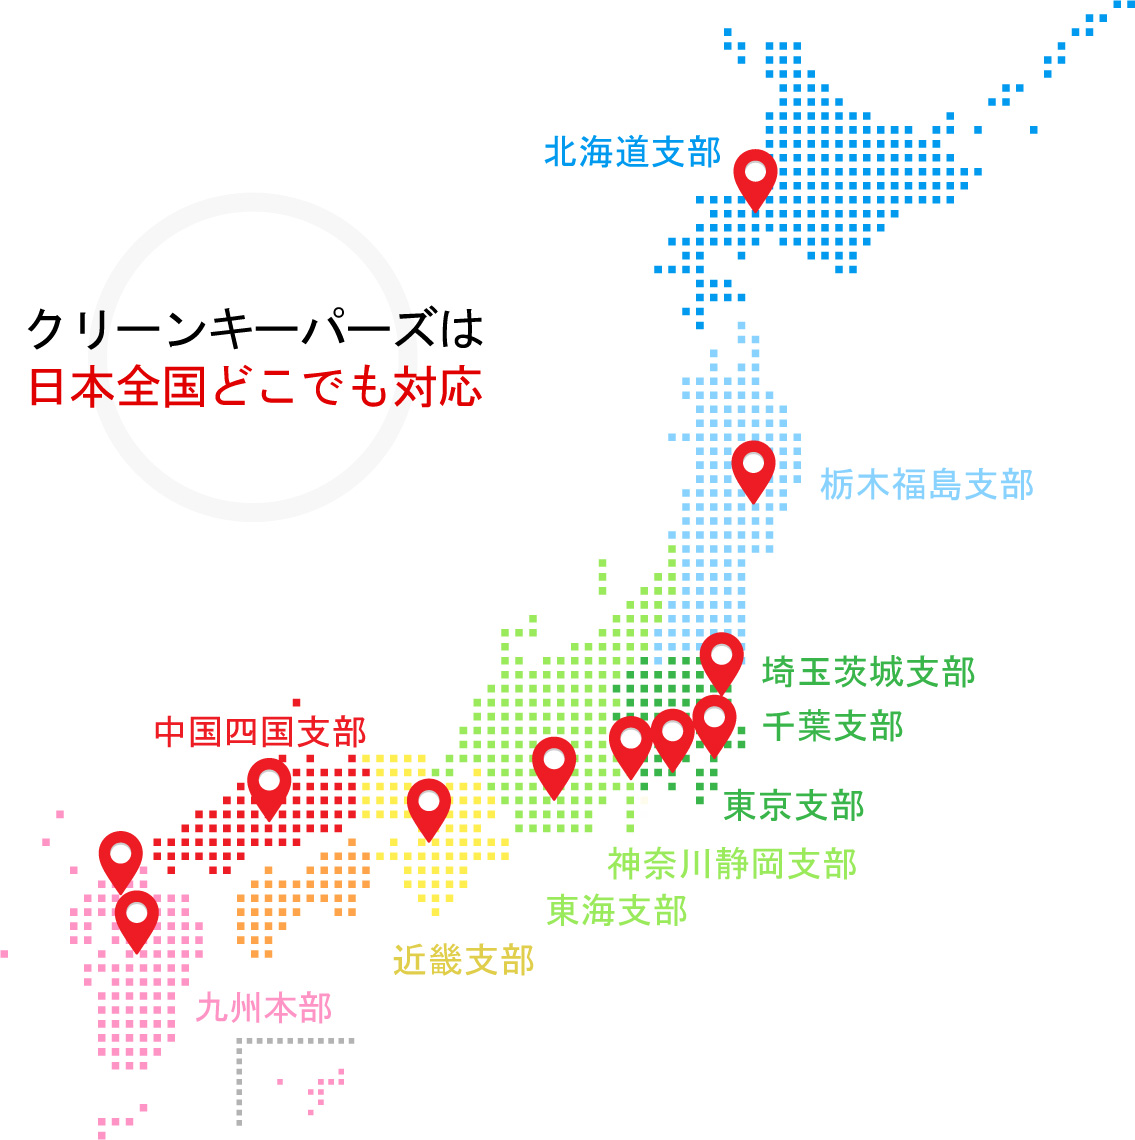 クリーンキーパーズは日本全国どこでも対応